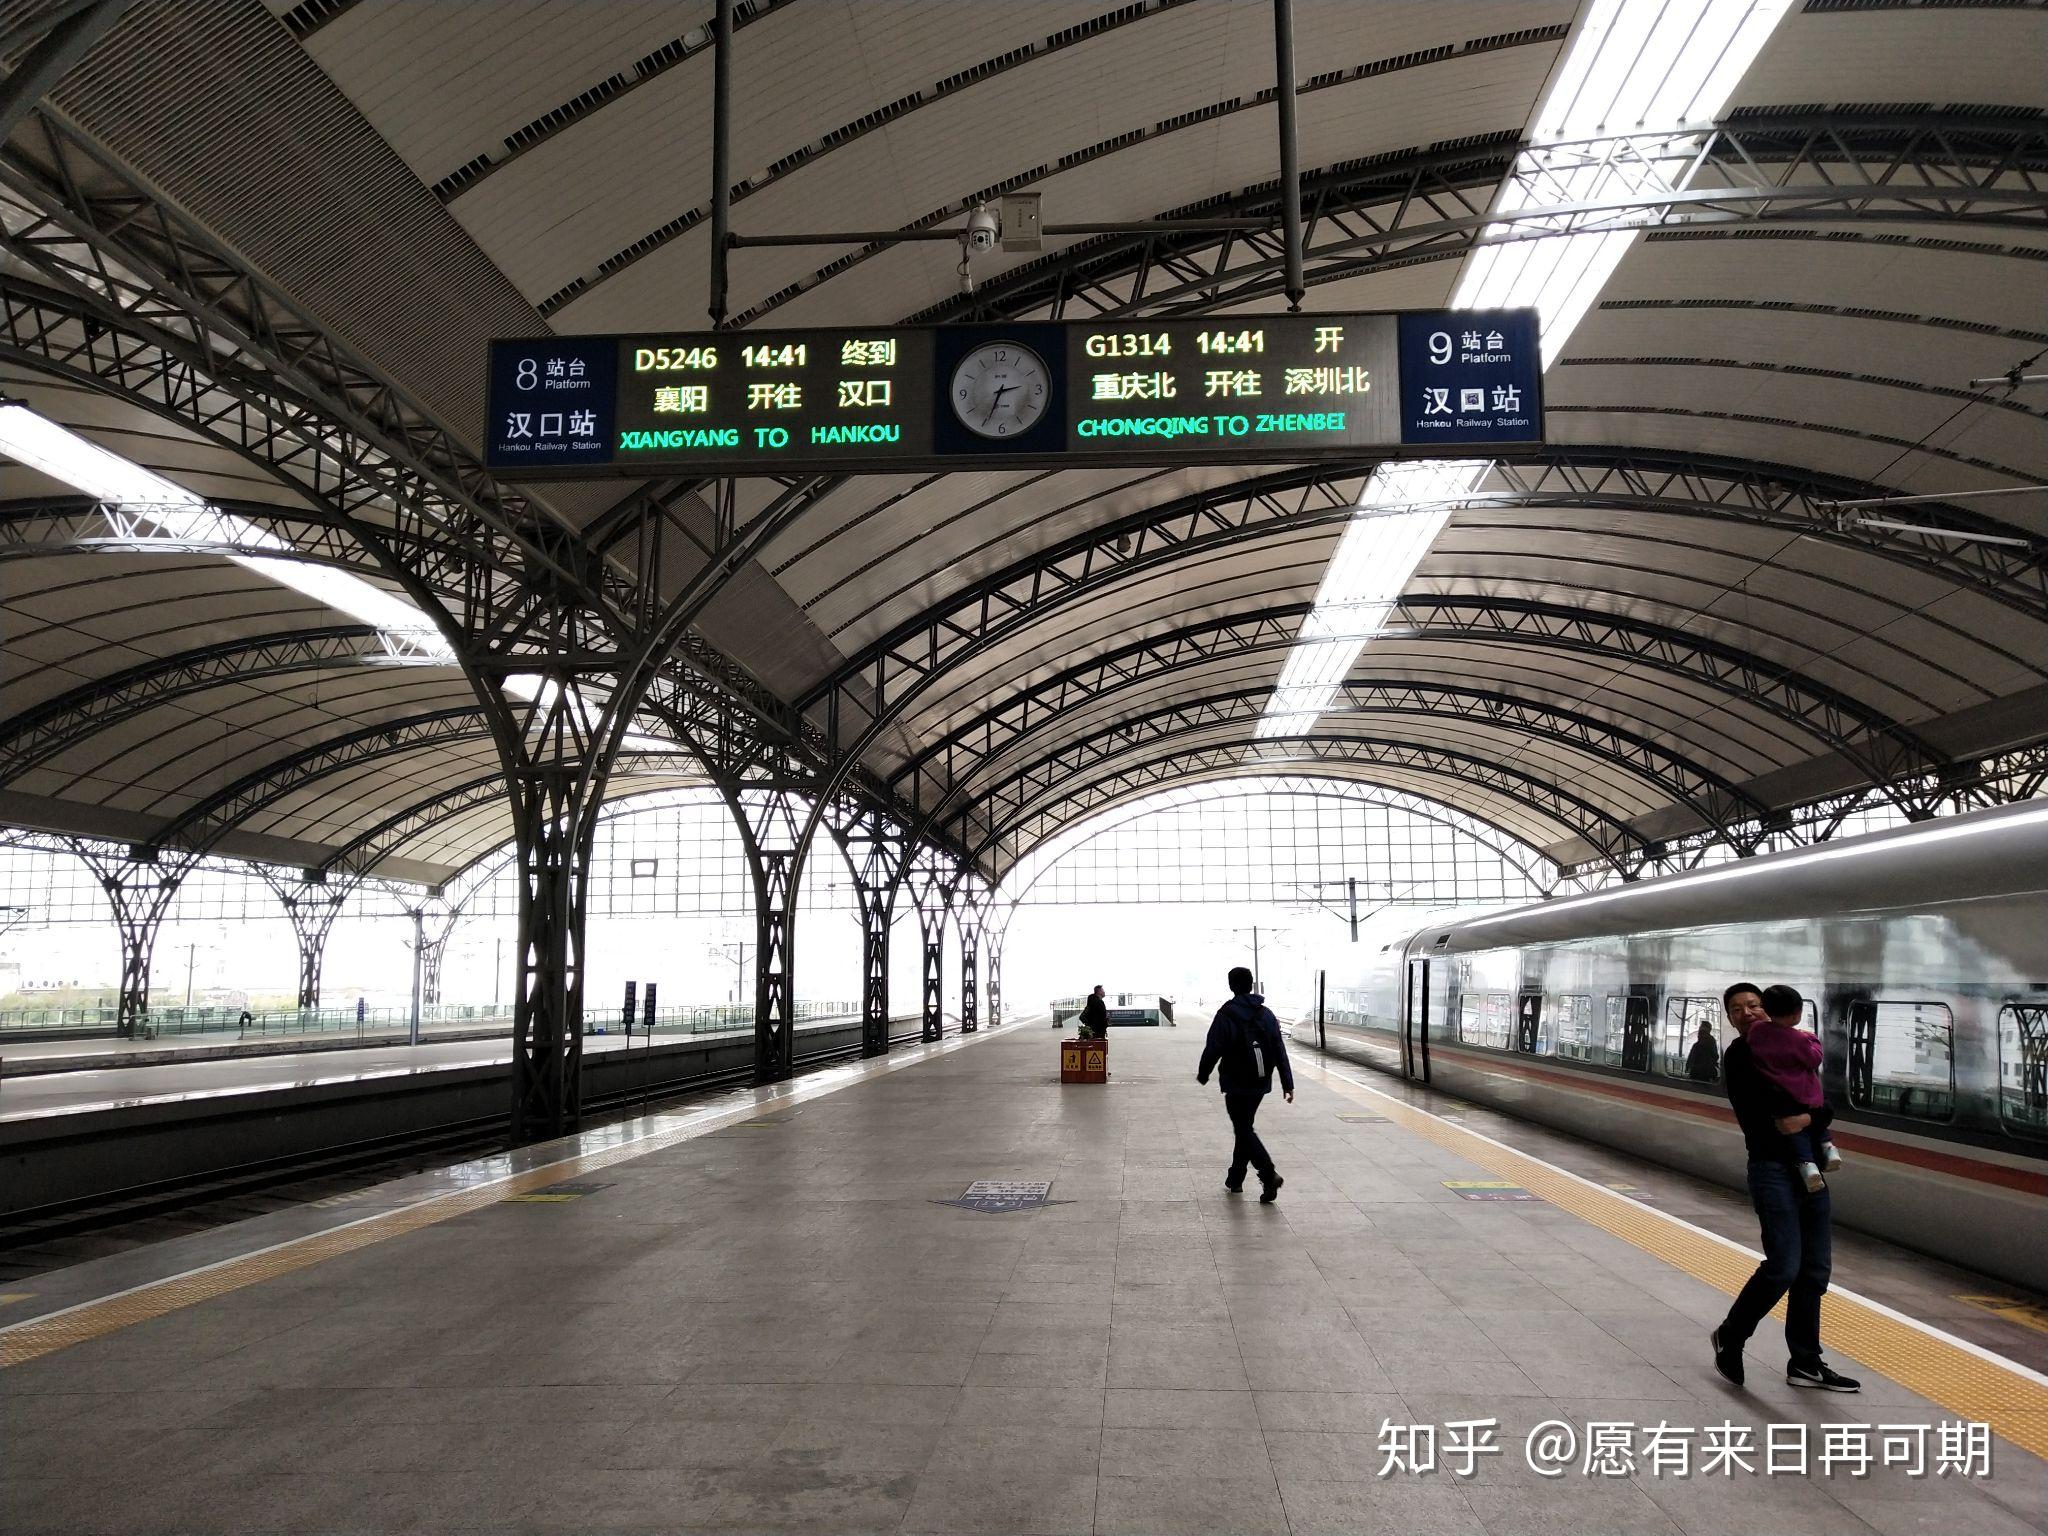 列车停靠汉口站9站台隔着车窗拍的d2234由crh2a统型重联沿途随拍列车